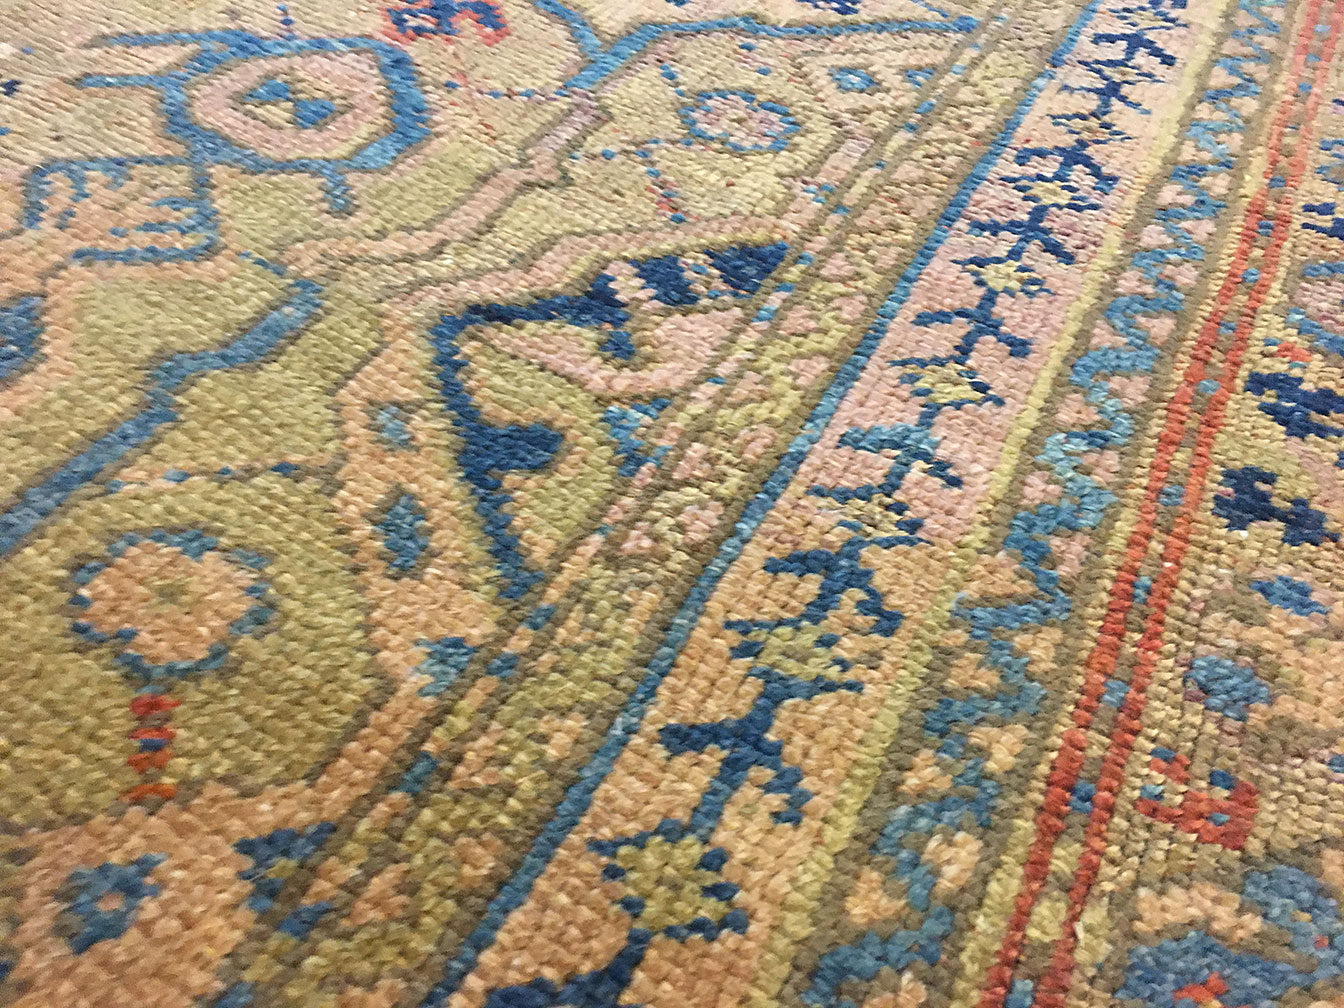 Antique oushak Carpet - # 52974